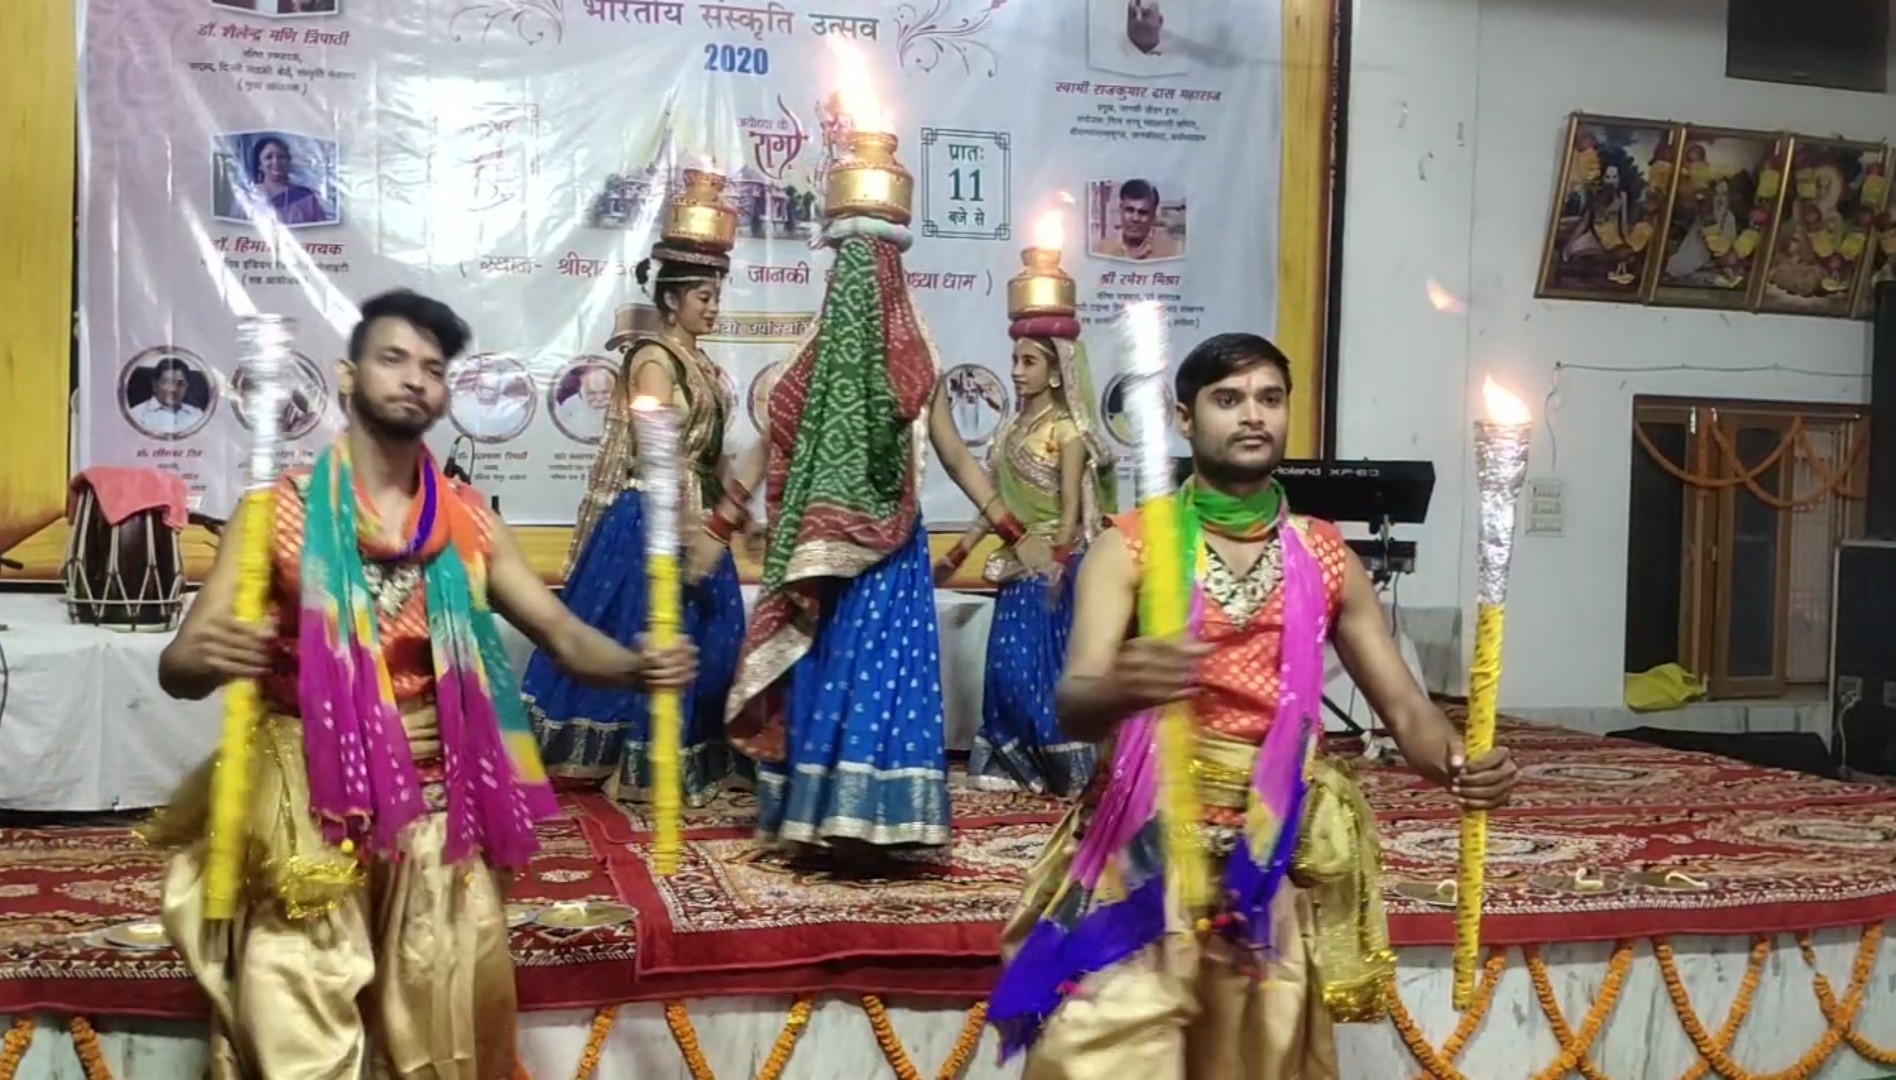 श्री राम के संस्कृति से परिचय कराएगी भारतीय सांस्कृतिक उत्सव